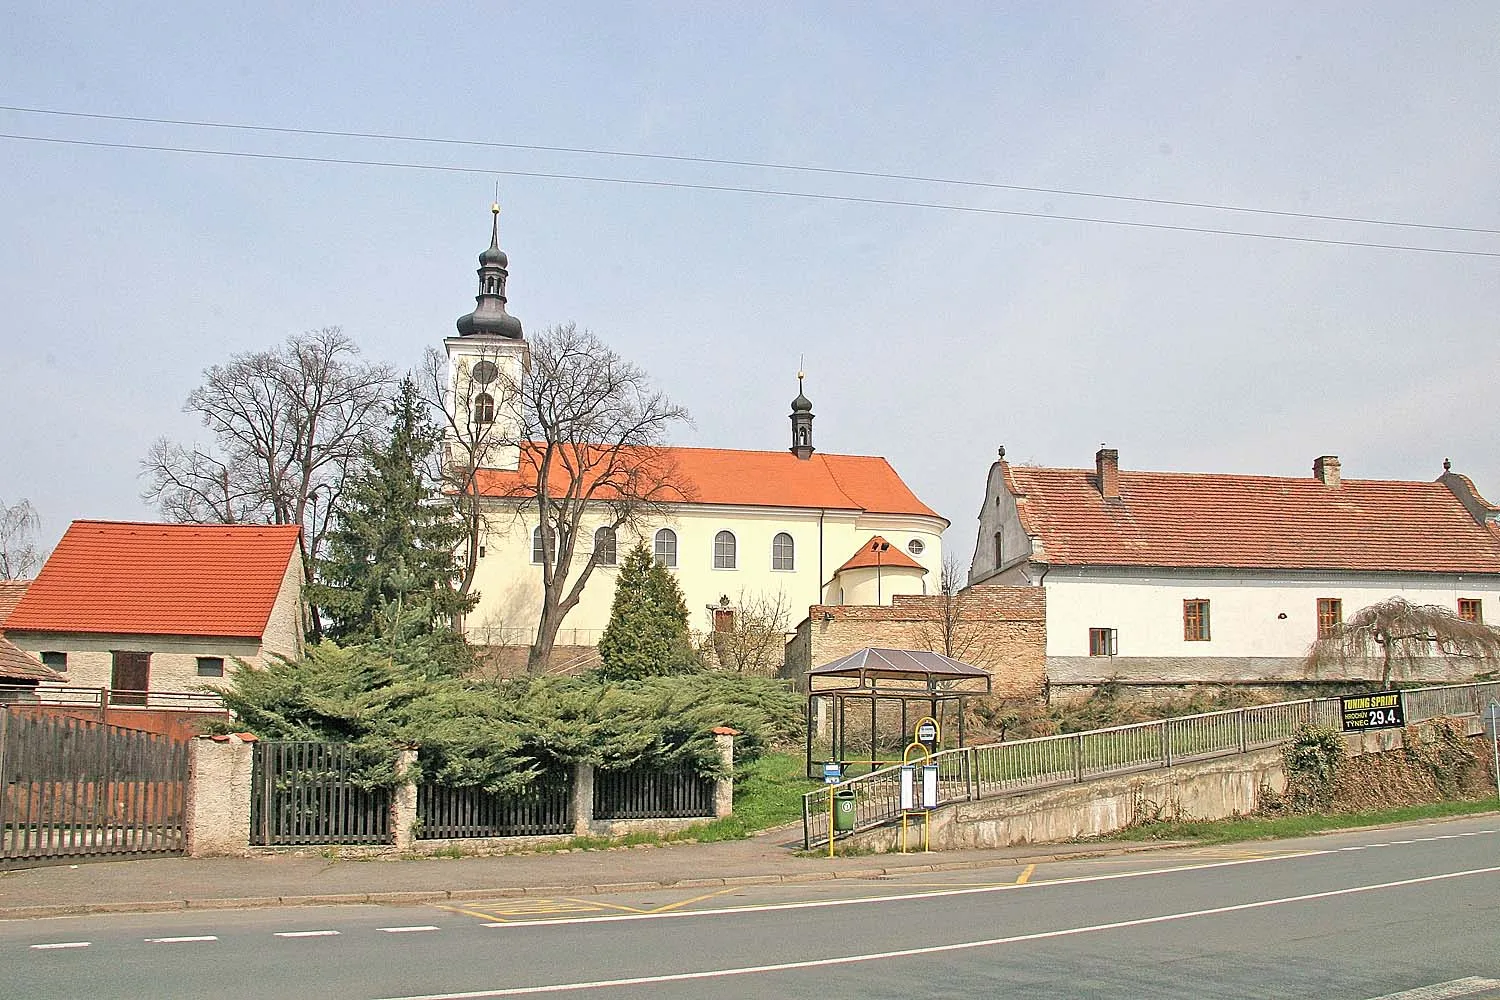 Photo showing: kostel Svatého Martina v Hrochově Týnci, district Chrudim
autor: Prazak

date: 20. 4. 2006